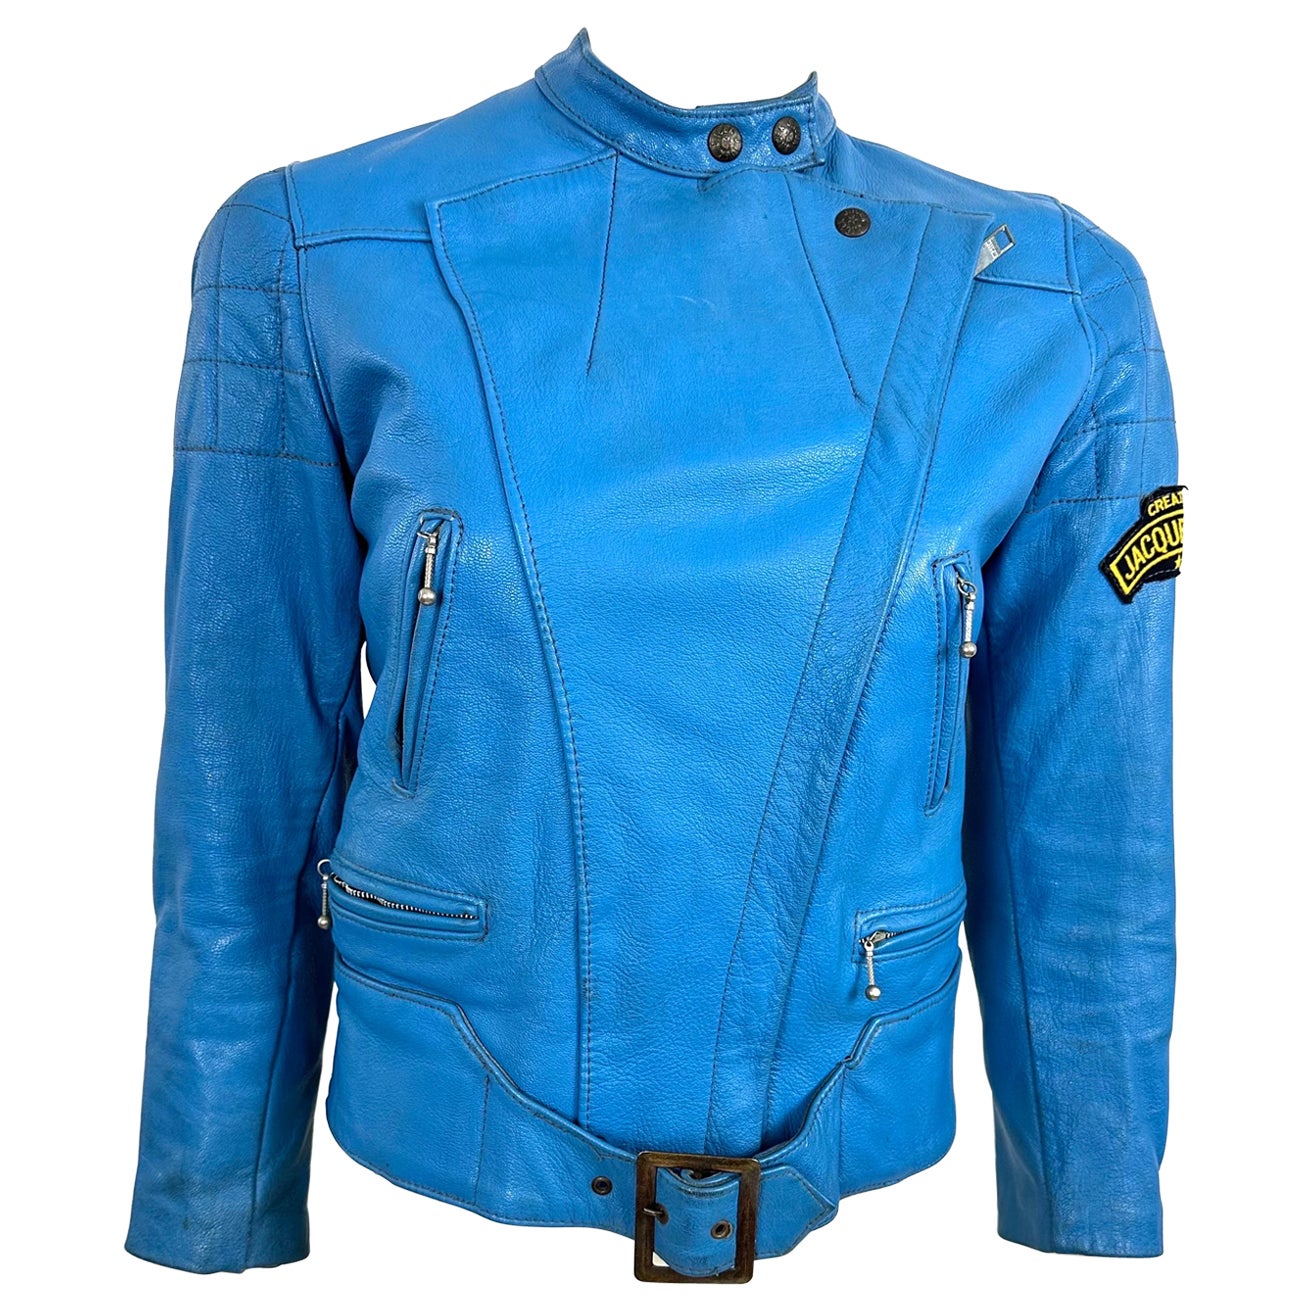 Jacques Icek - Rare veste en cuir de motard des années 70